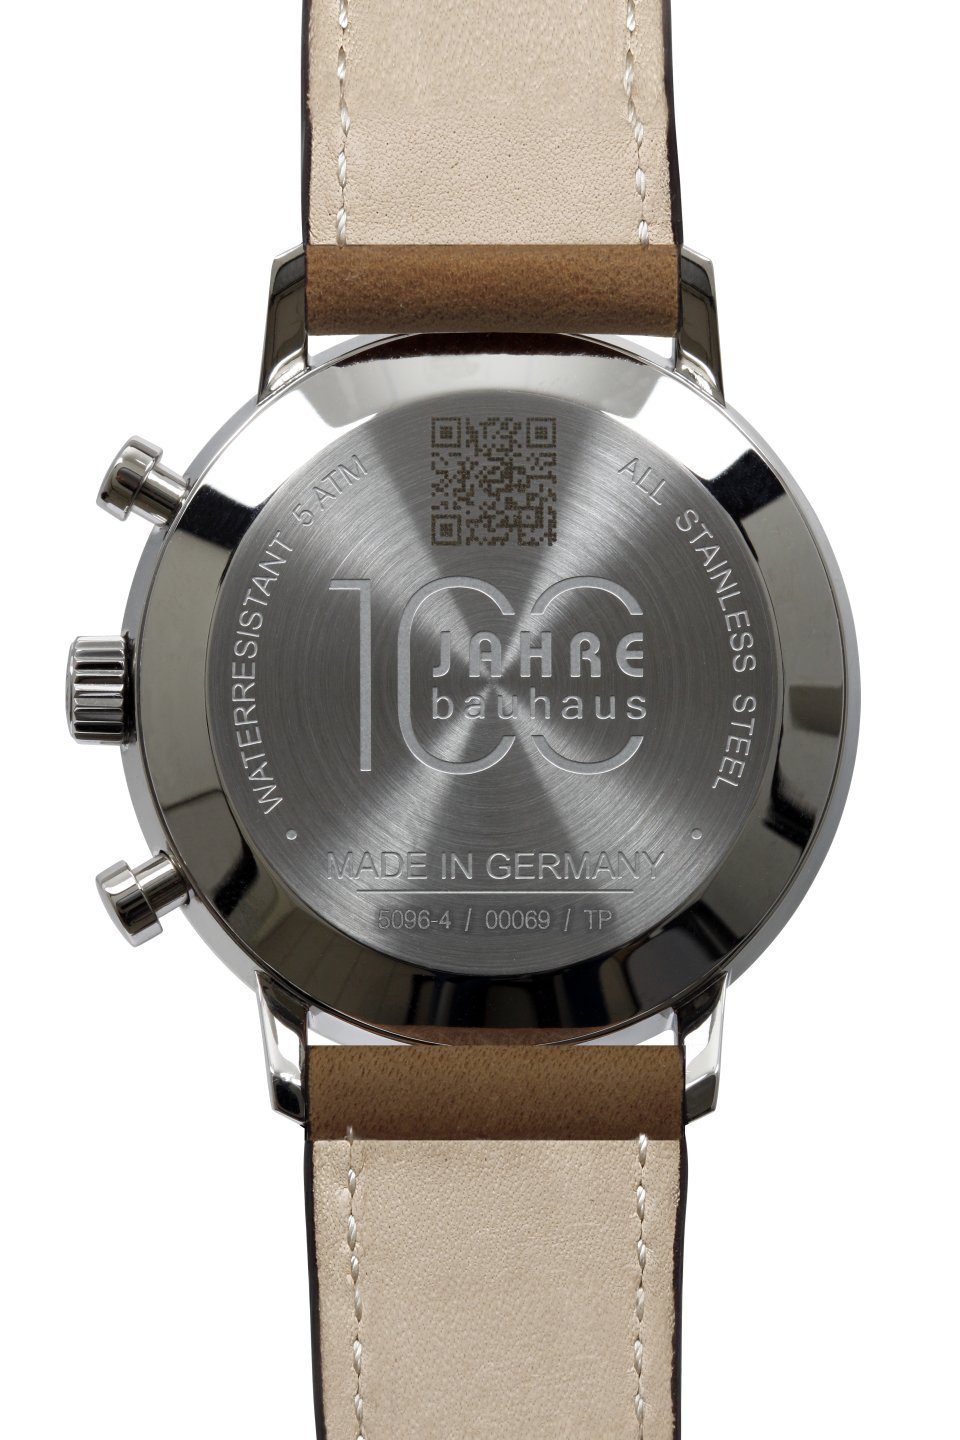 Germany Braun Made Jahre ANNIE mm, 5096-4 Bauhaus 100 41 Lederband Chronograph Weiss IRON in Herrenuhr